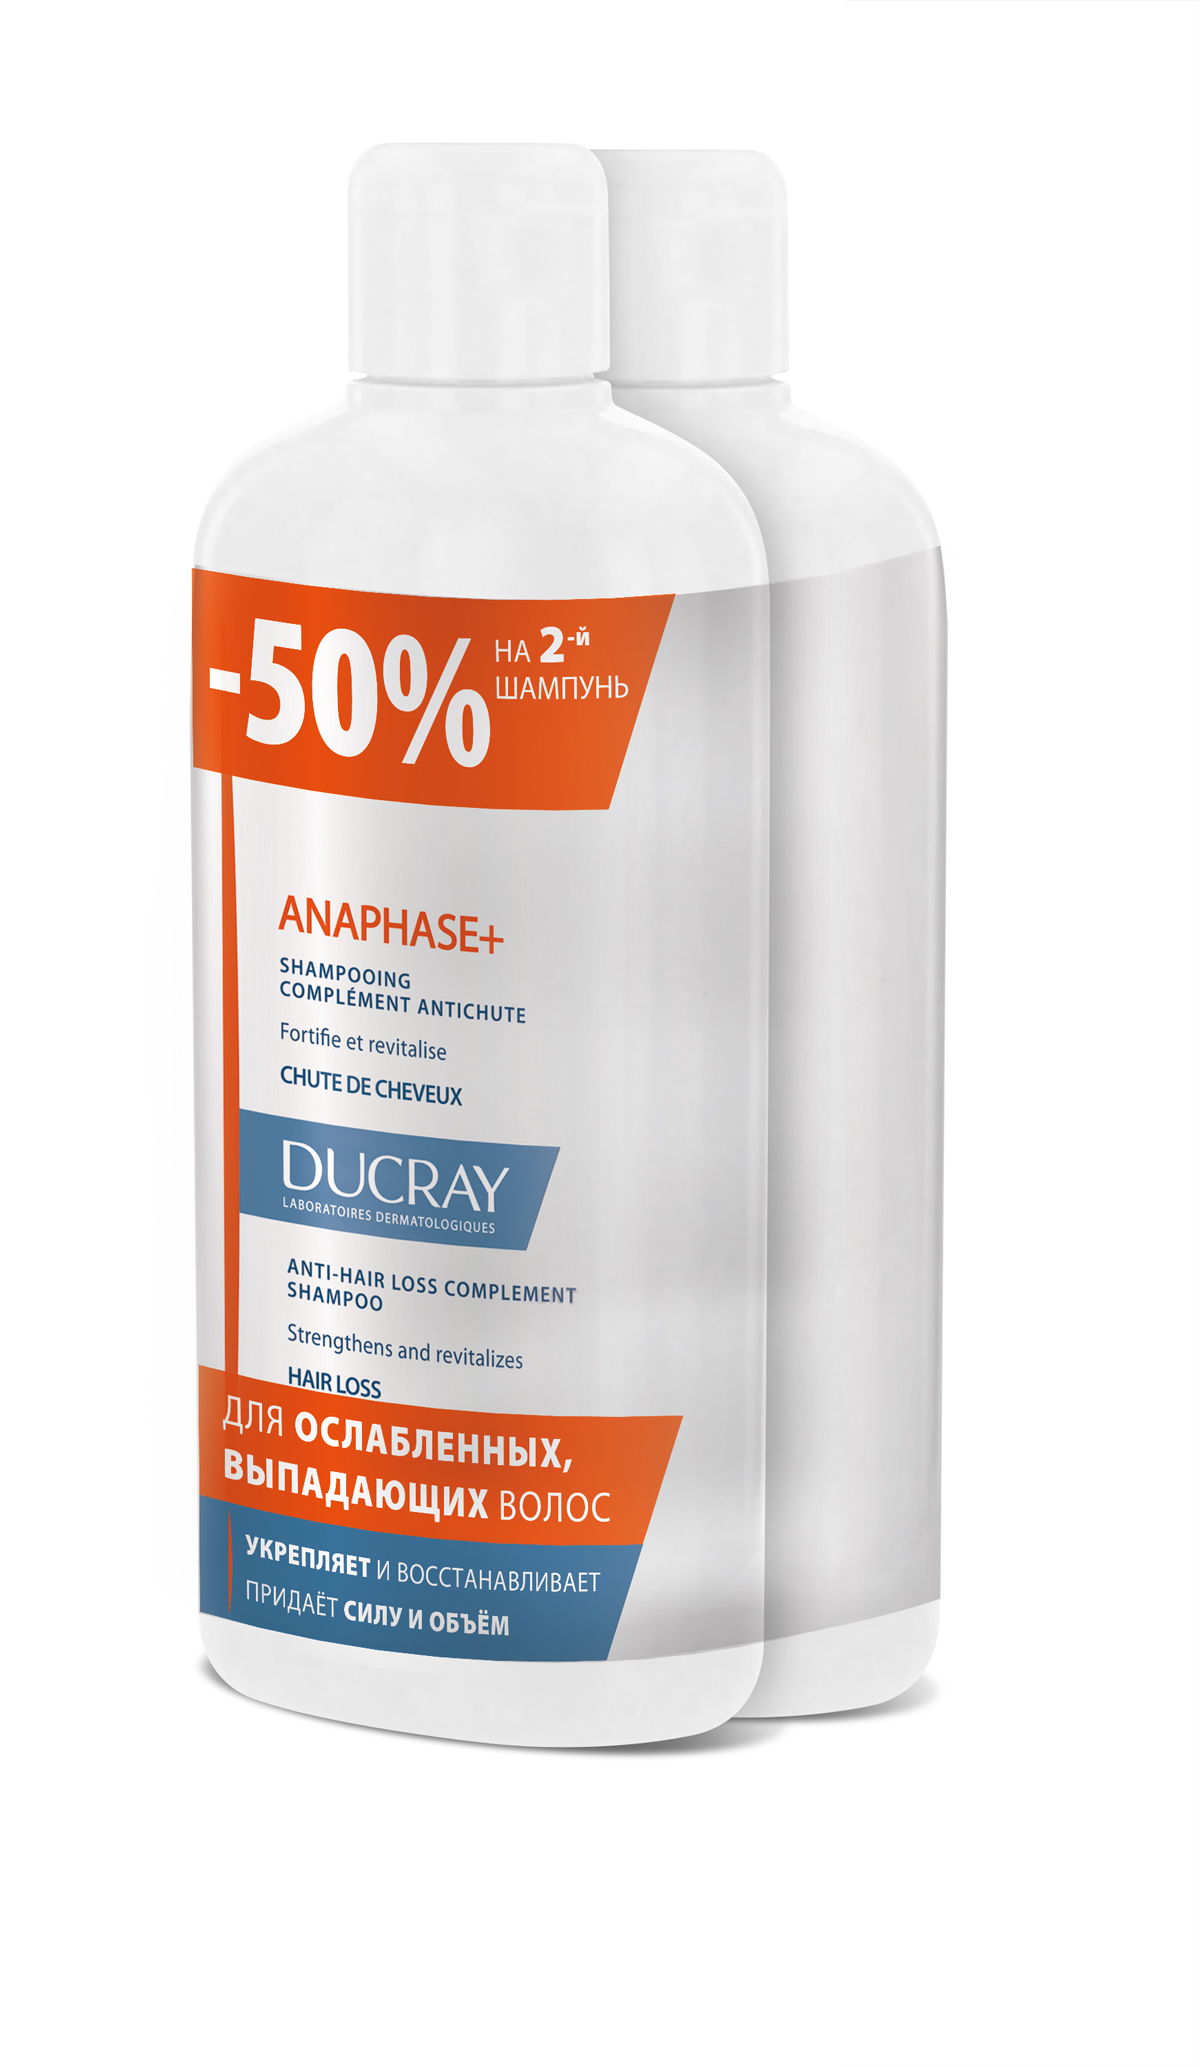 Ducray Набор Анафаз+ Шампунь для ослабленных, выпадающих волос 400 мл 2 шт скидка 50% на второй продукт краска для волос loreal paris